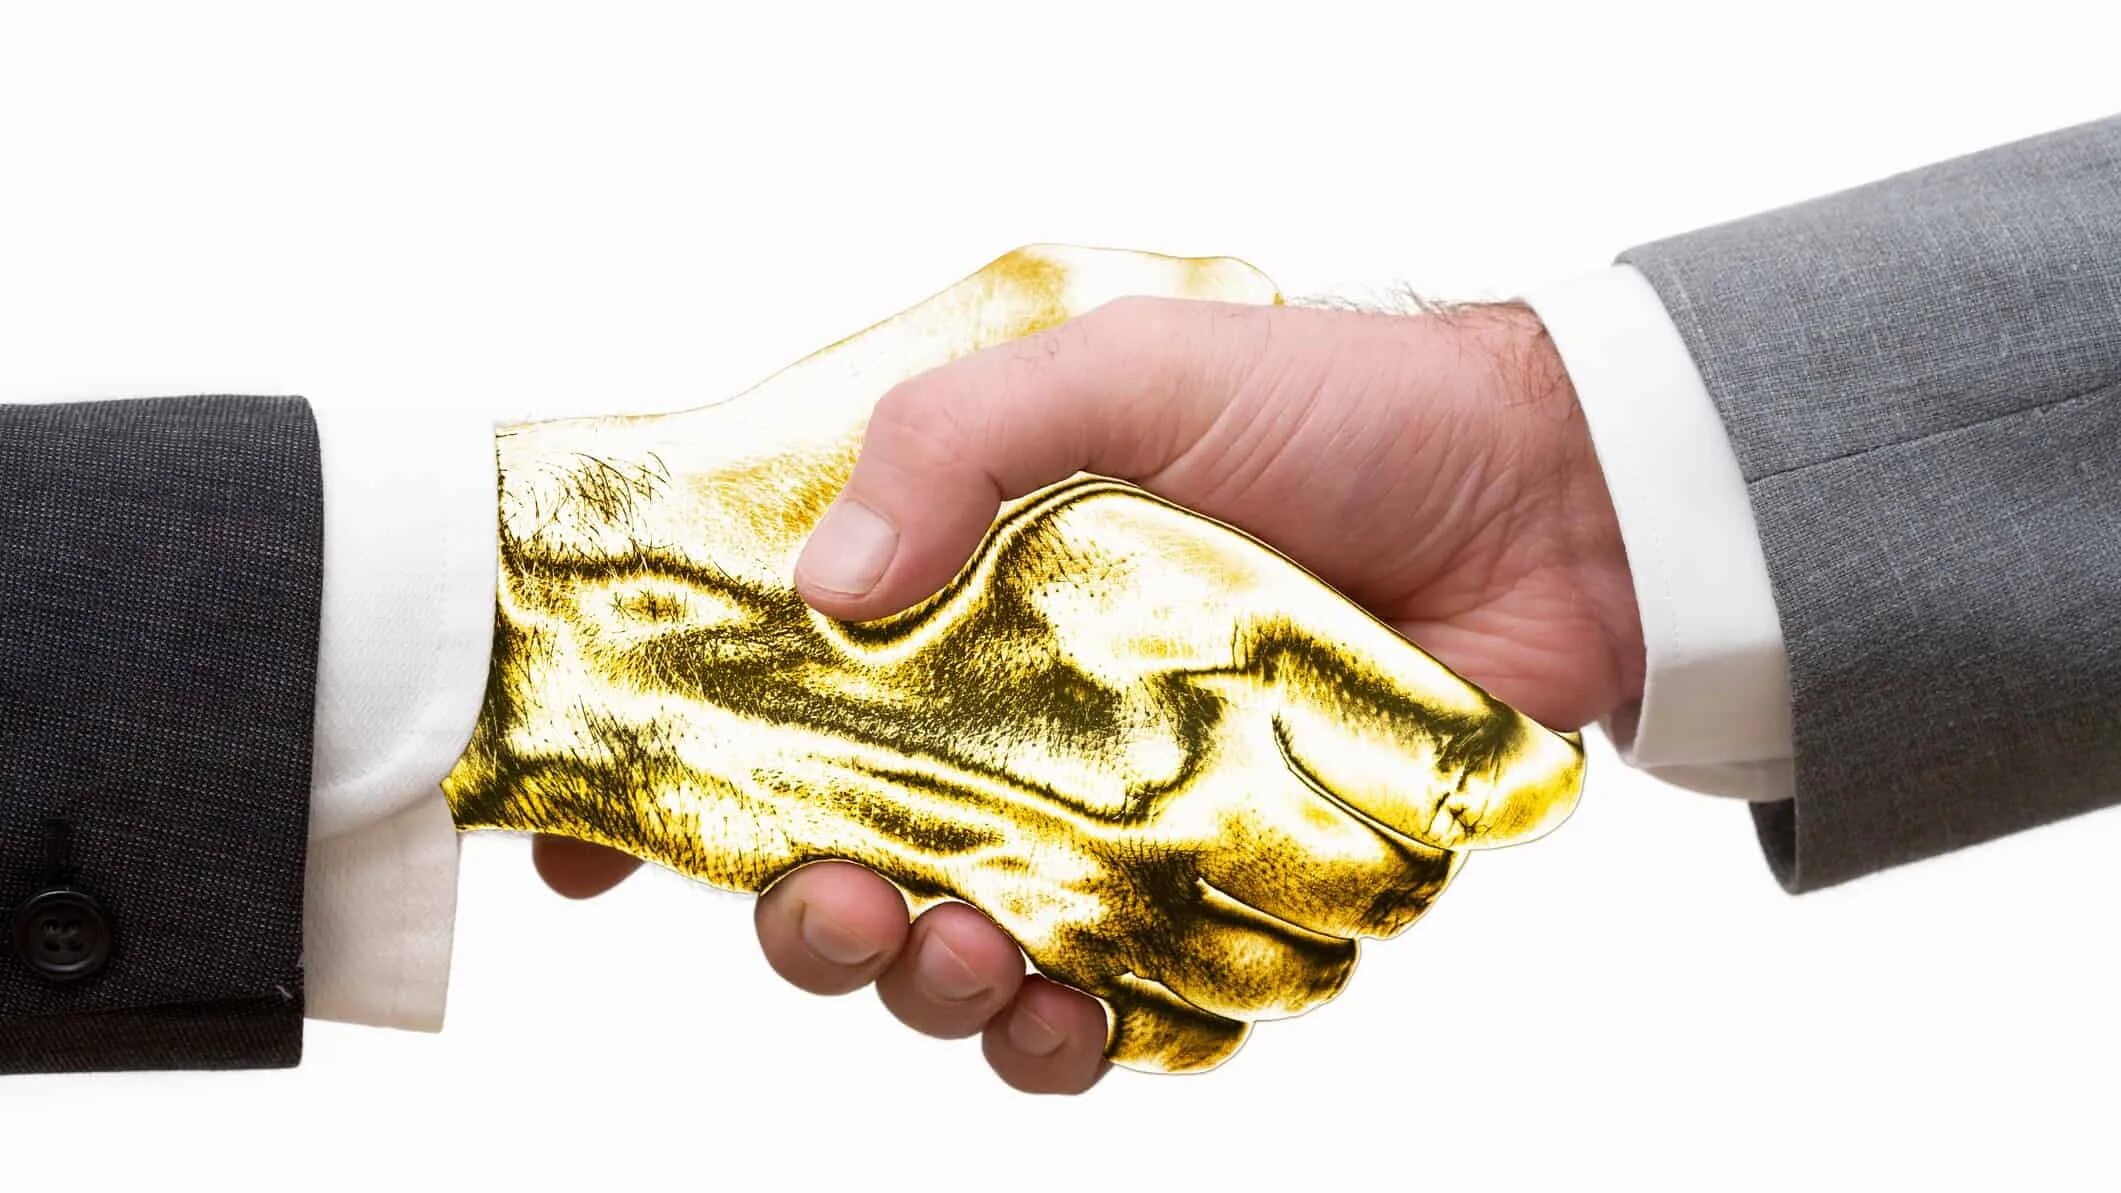 По колено руки в золоте. Golden handshake идиома. Золотое рукопожатие. Золотые руки. Золото в руках.